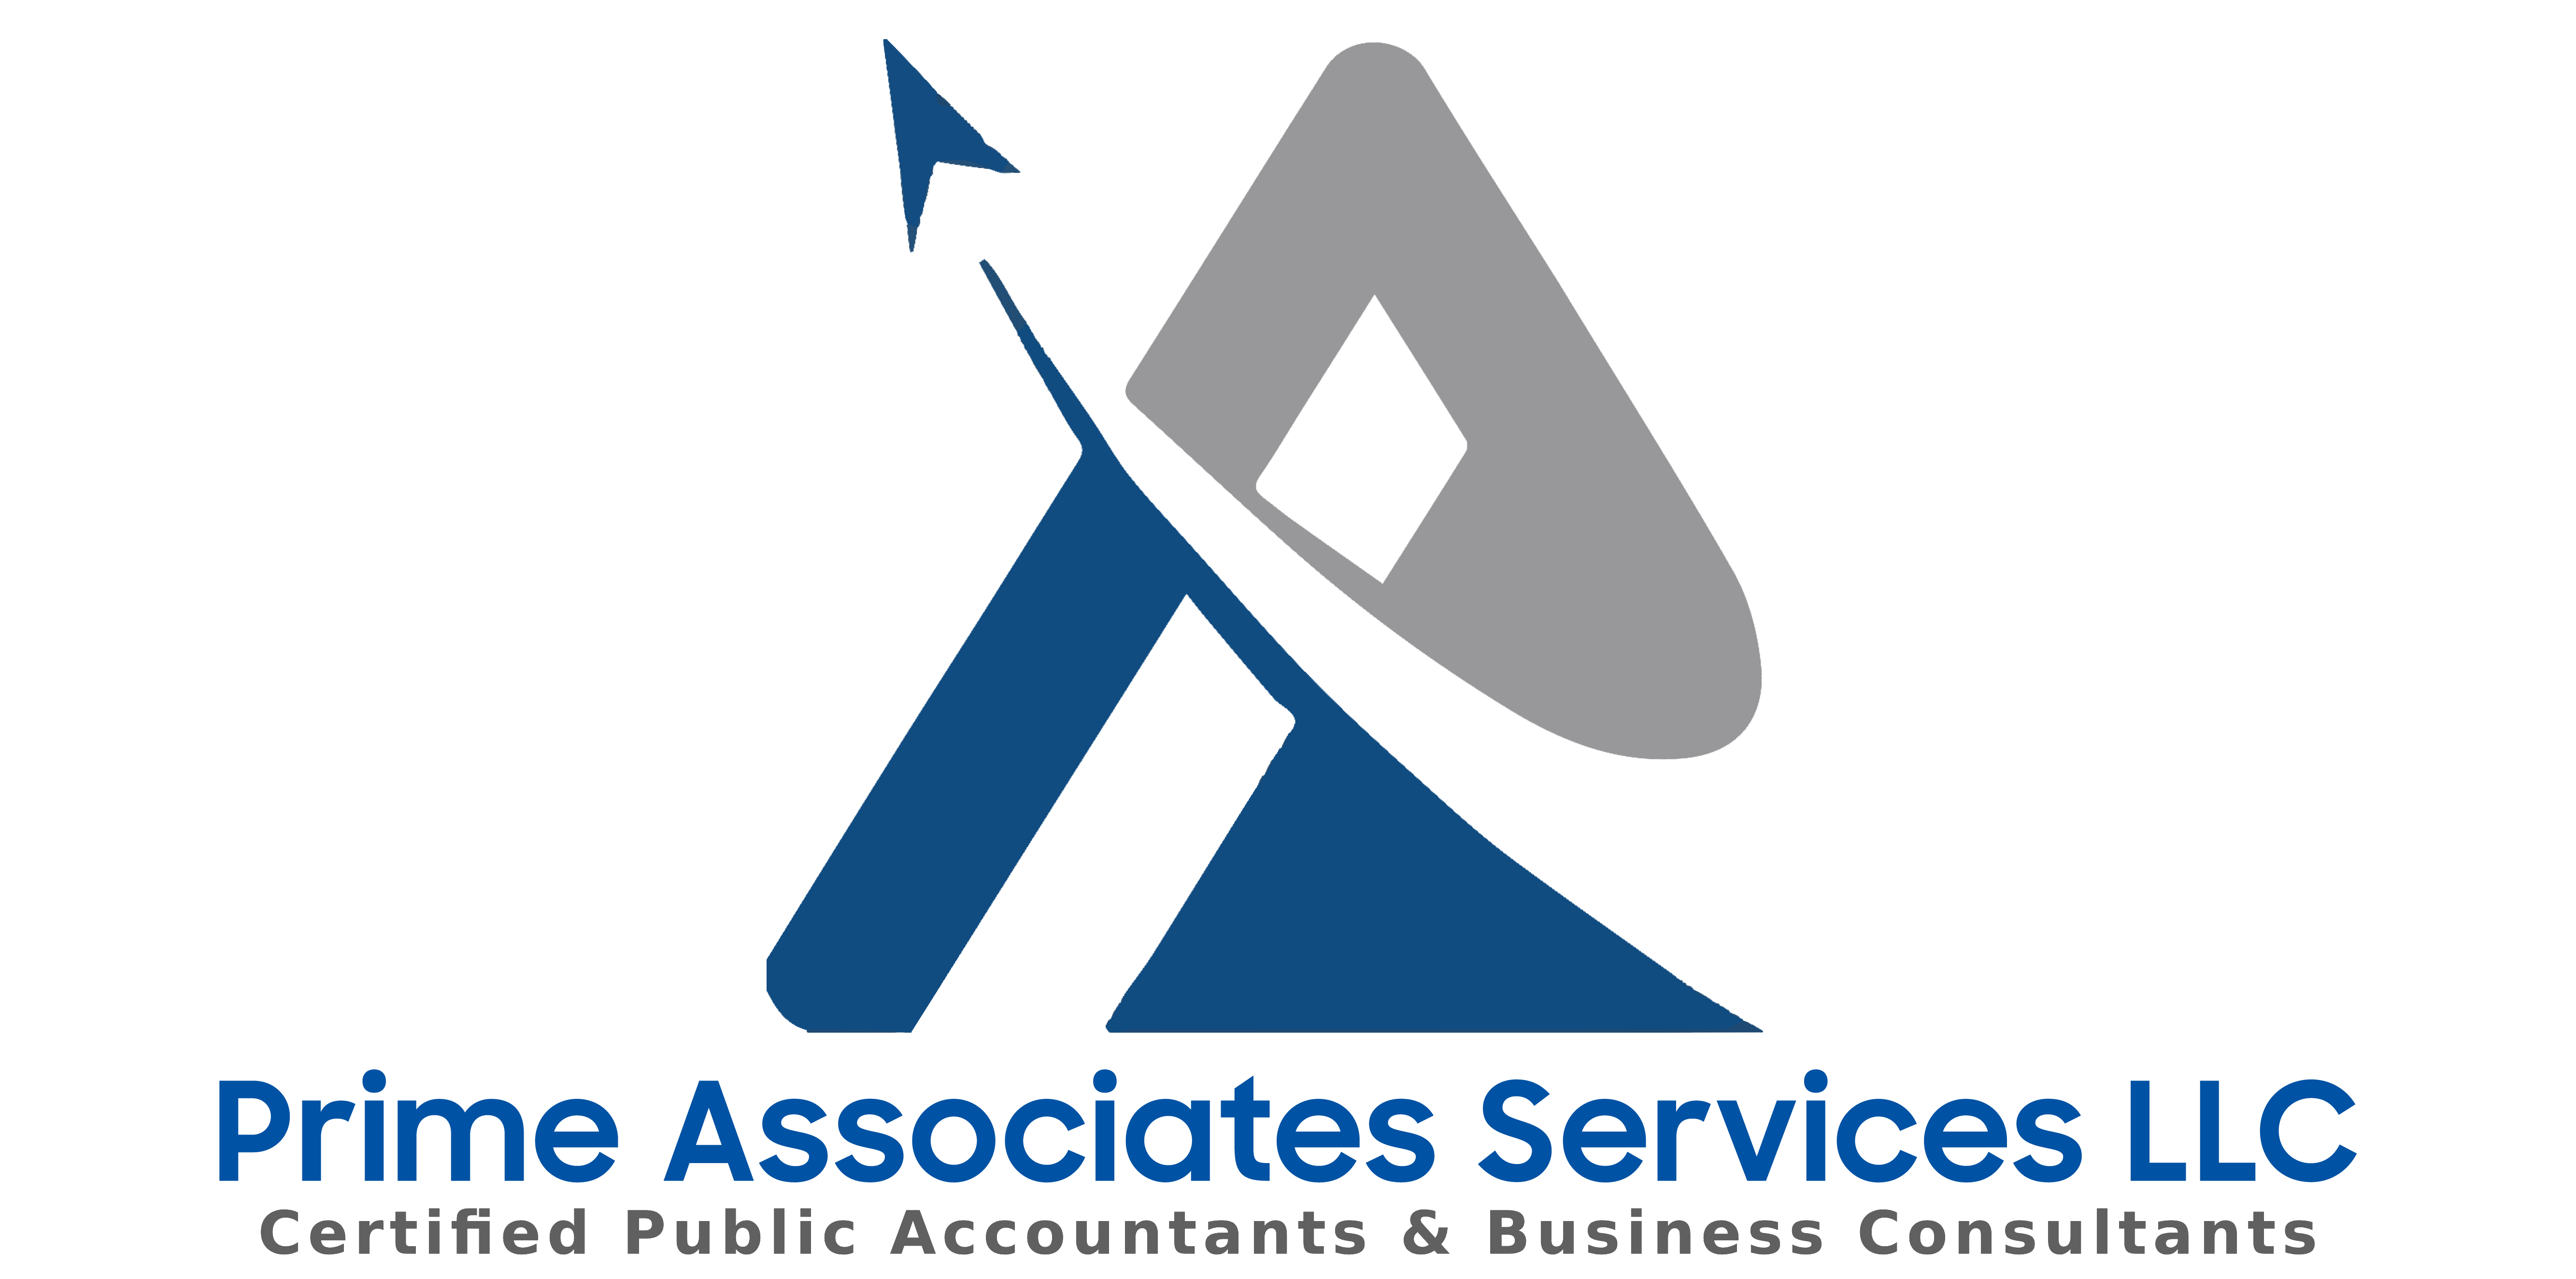 Prime Associates Services